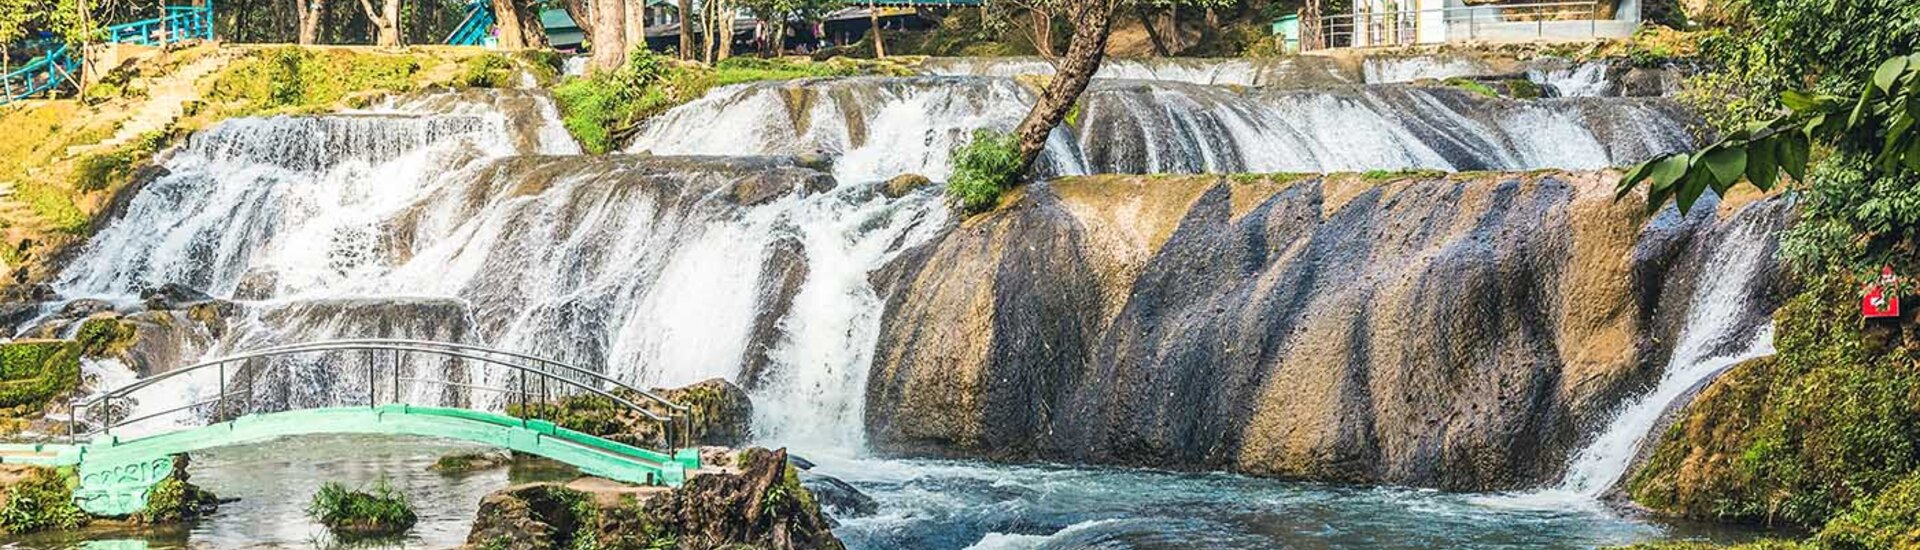 Wasserfall in der Nähe von Plyn Oo Lwin, Myanmar